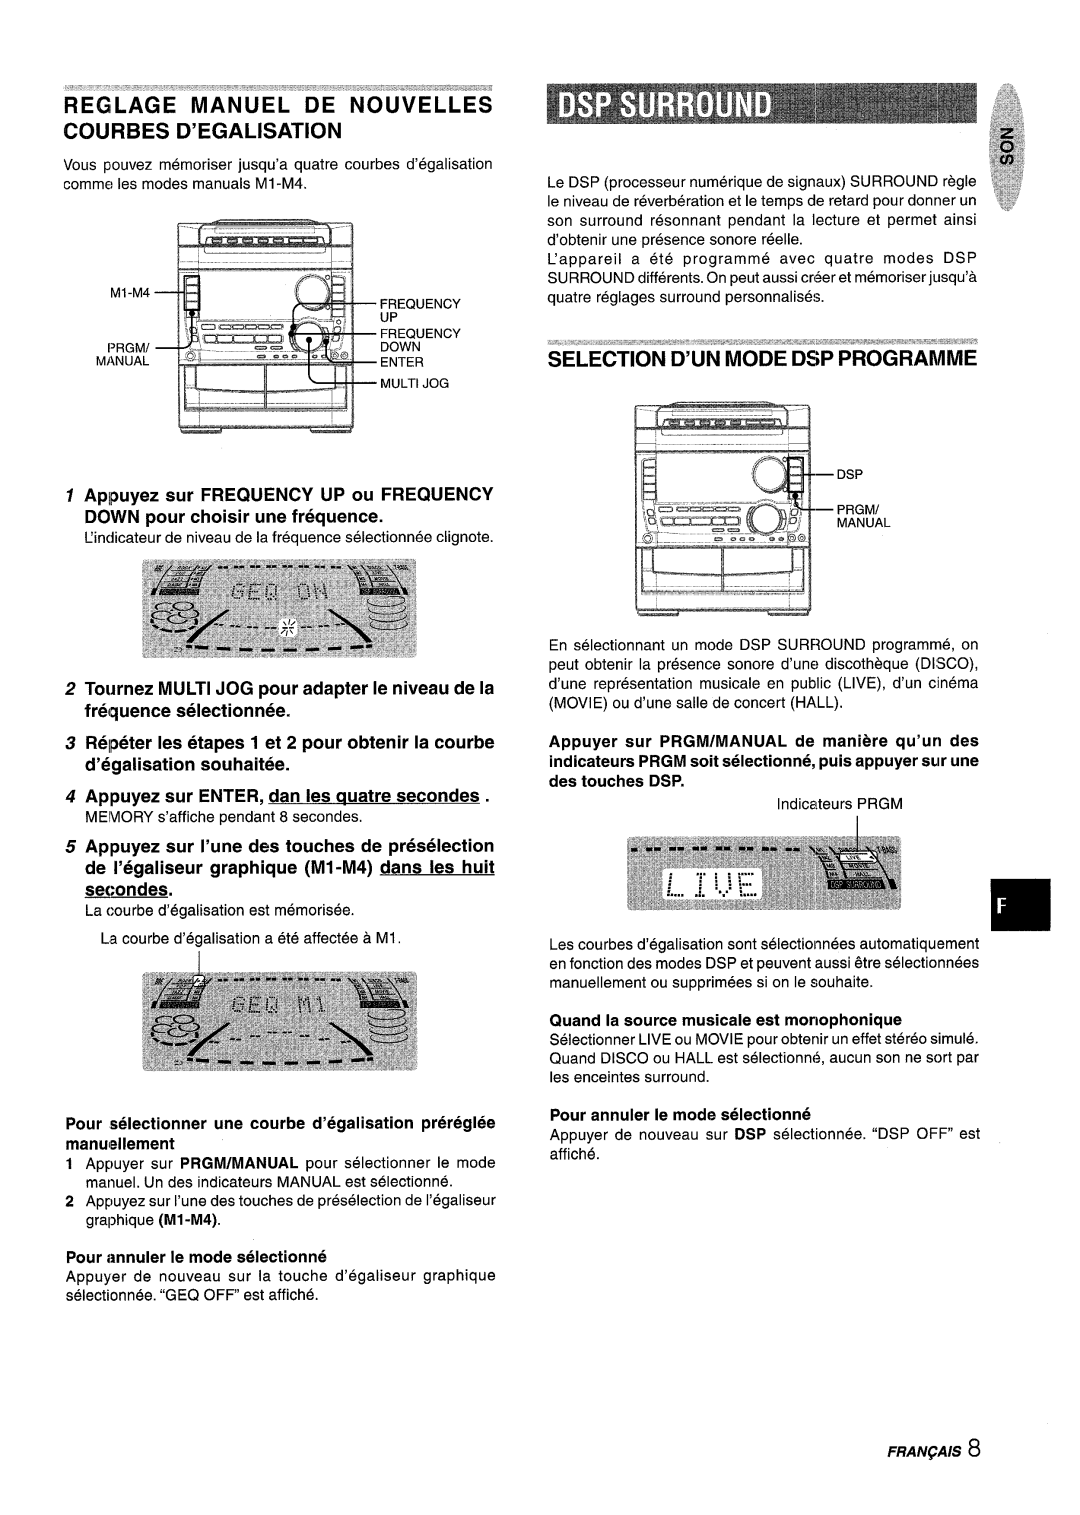 Sony NSX-A959 manual secondes, Regilage Manuel De Nouvelles ~Ourbes D’Egalisation, M1-M4, Frequency, Down, Enter, Multijog 